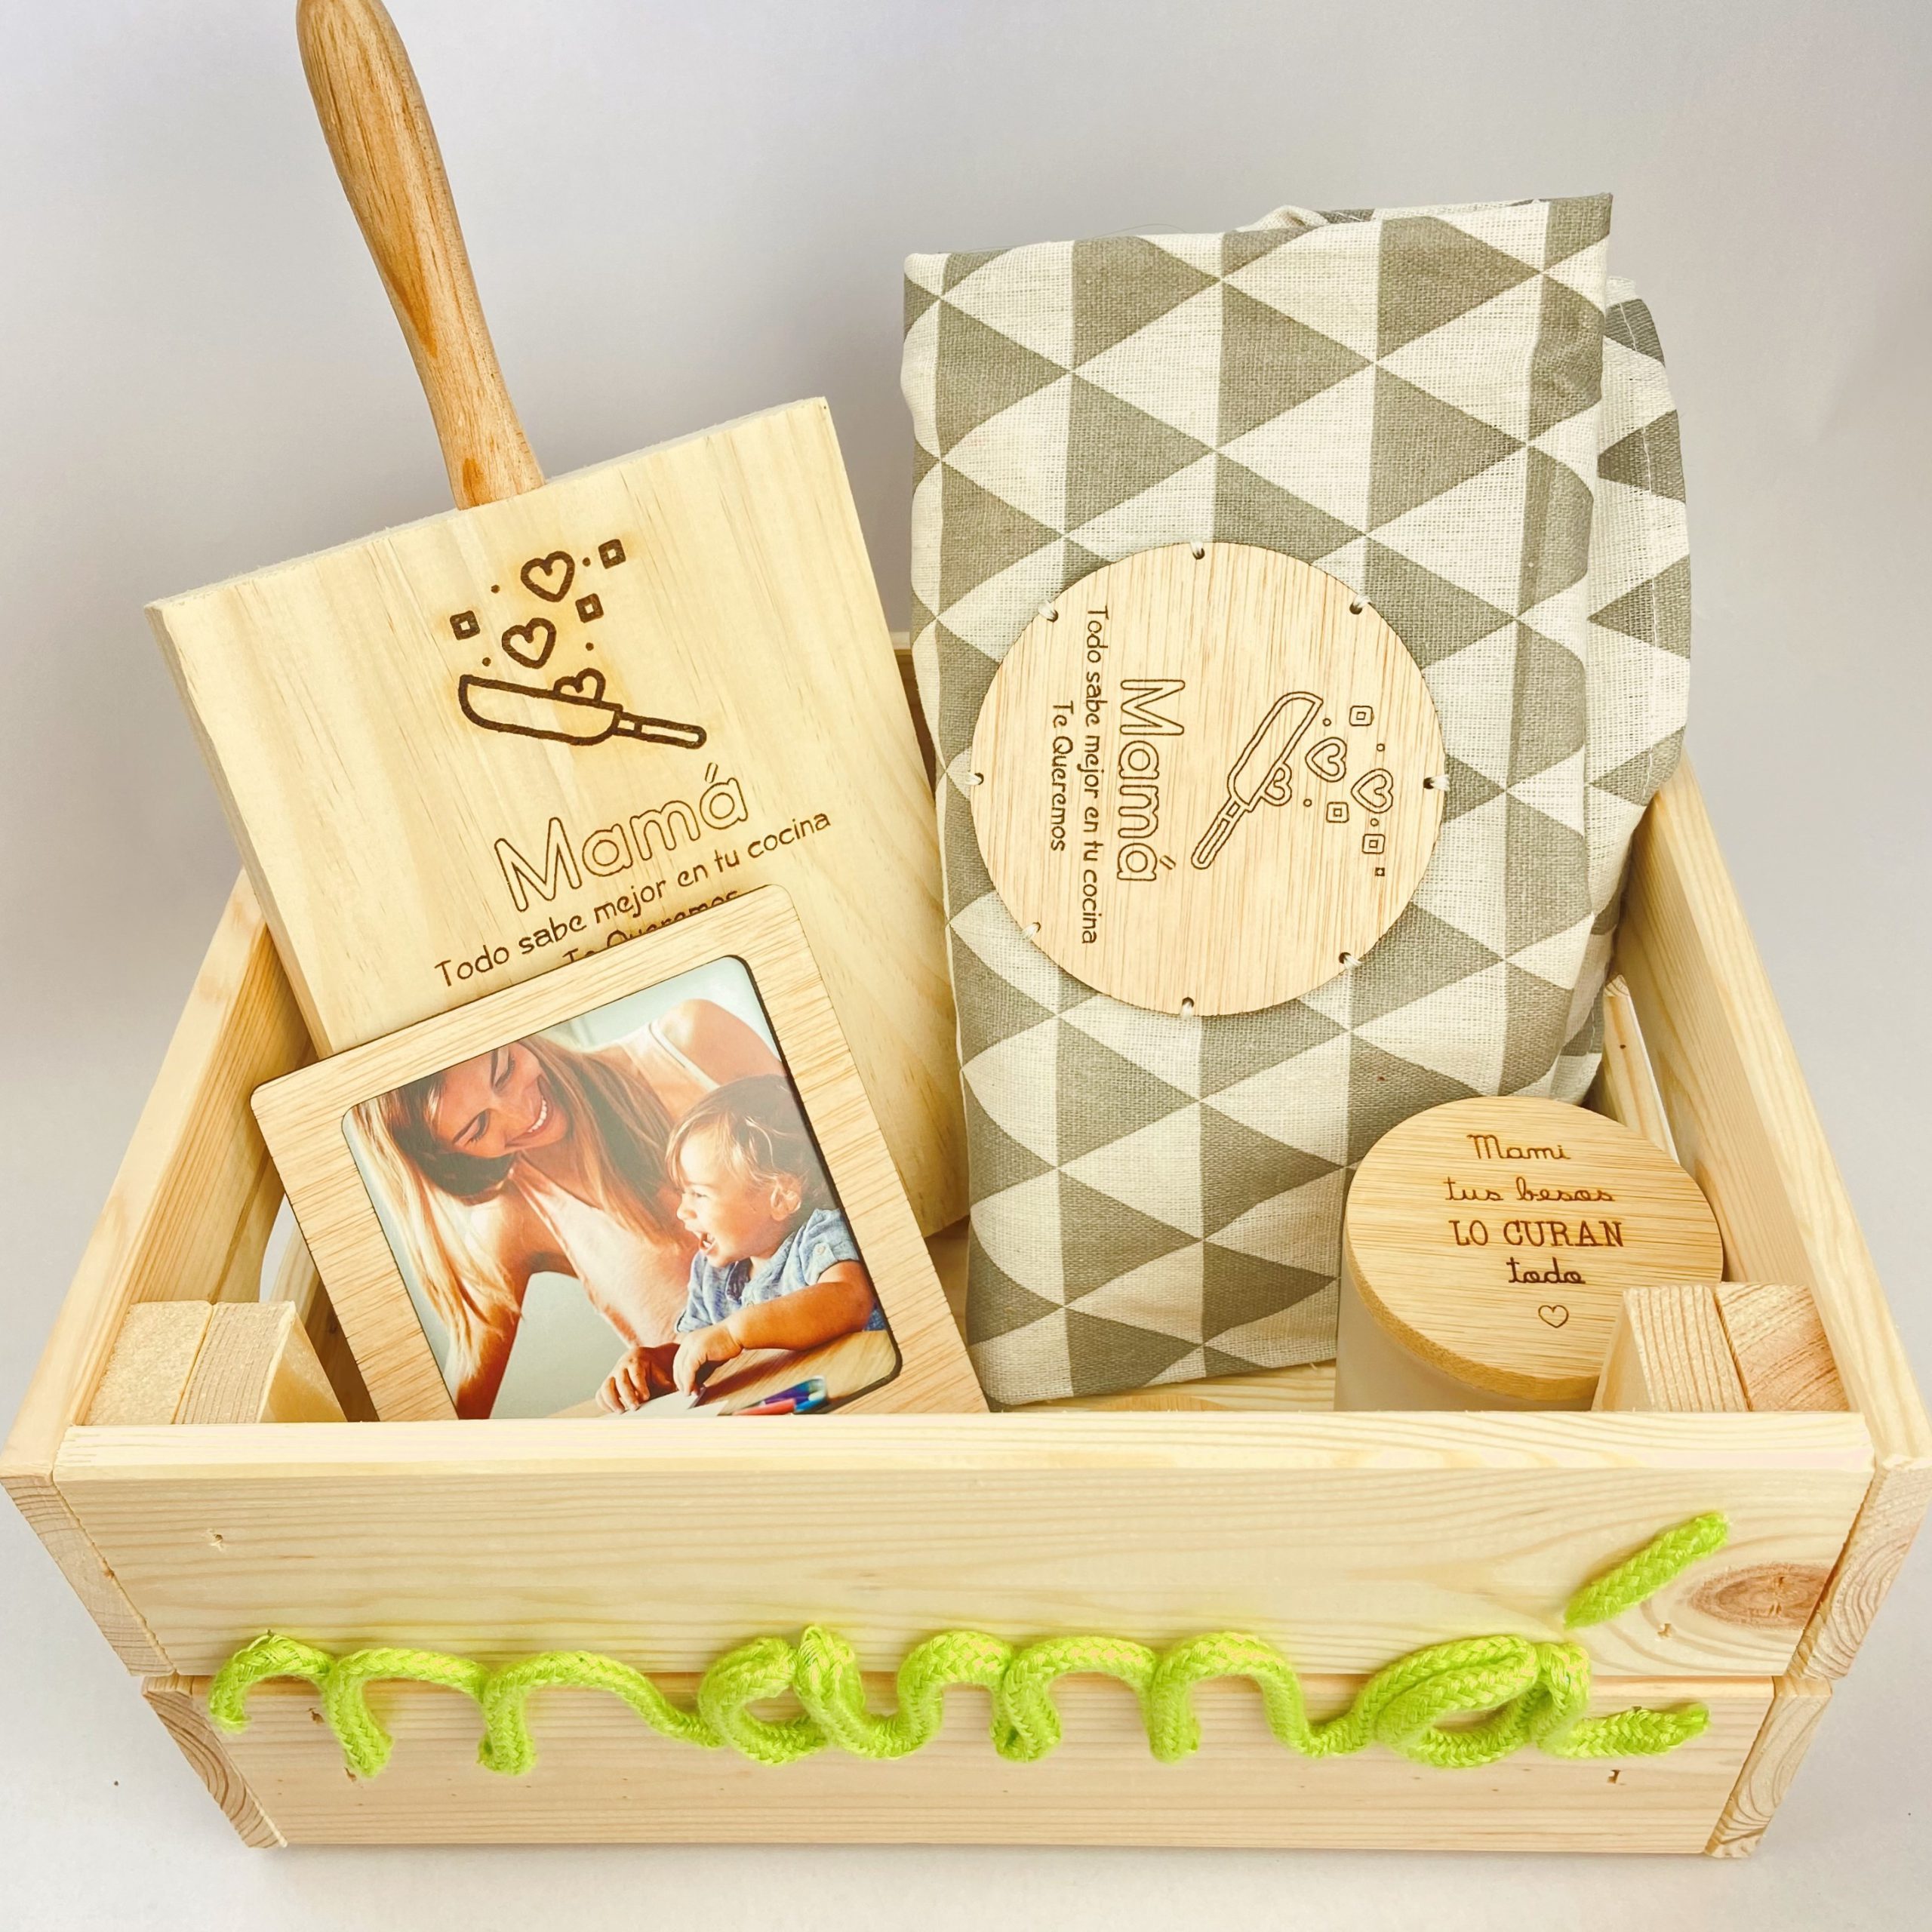 Comprar Cajas de madera personalizadas para regalo online - Holamama